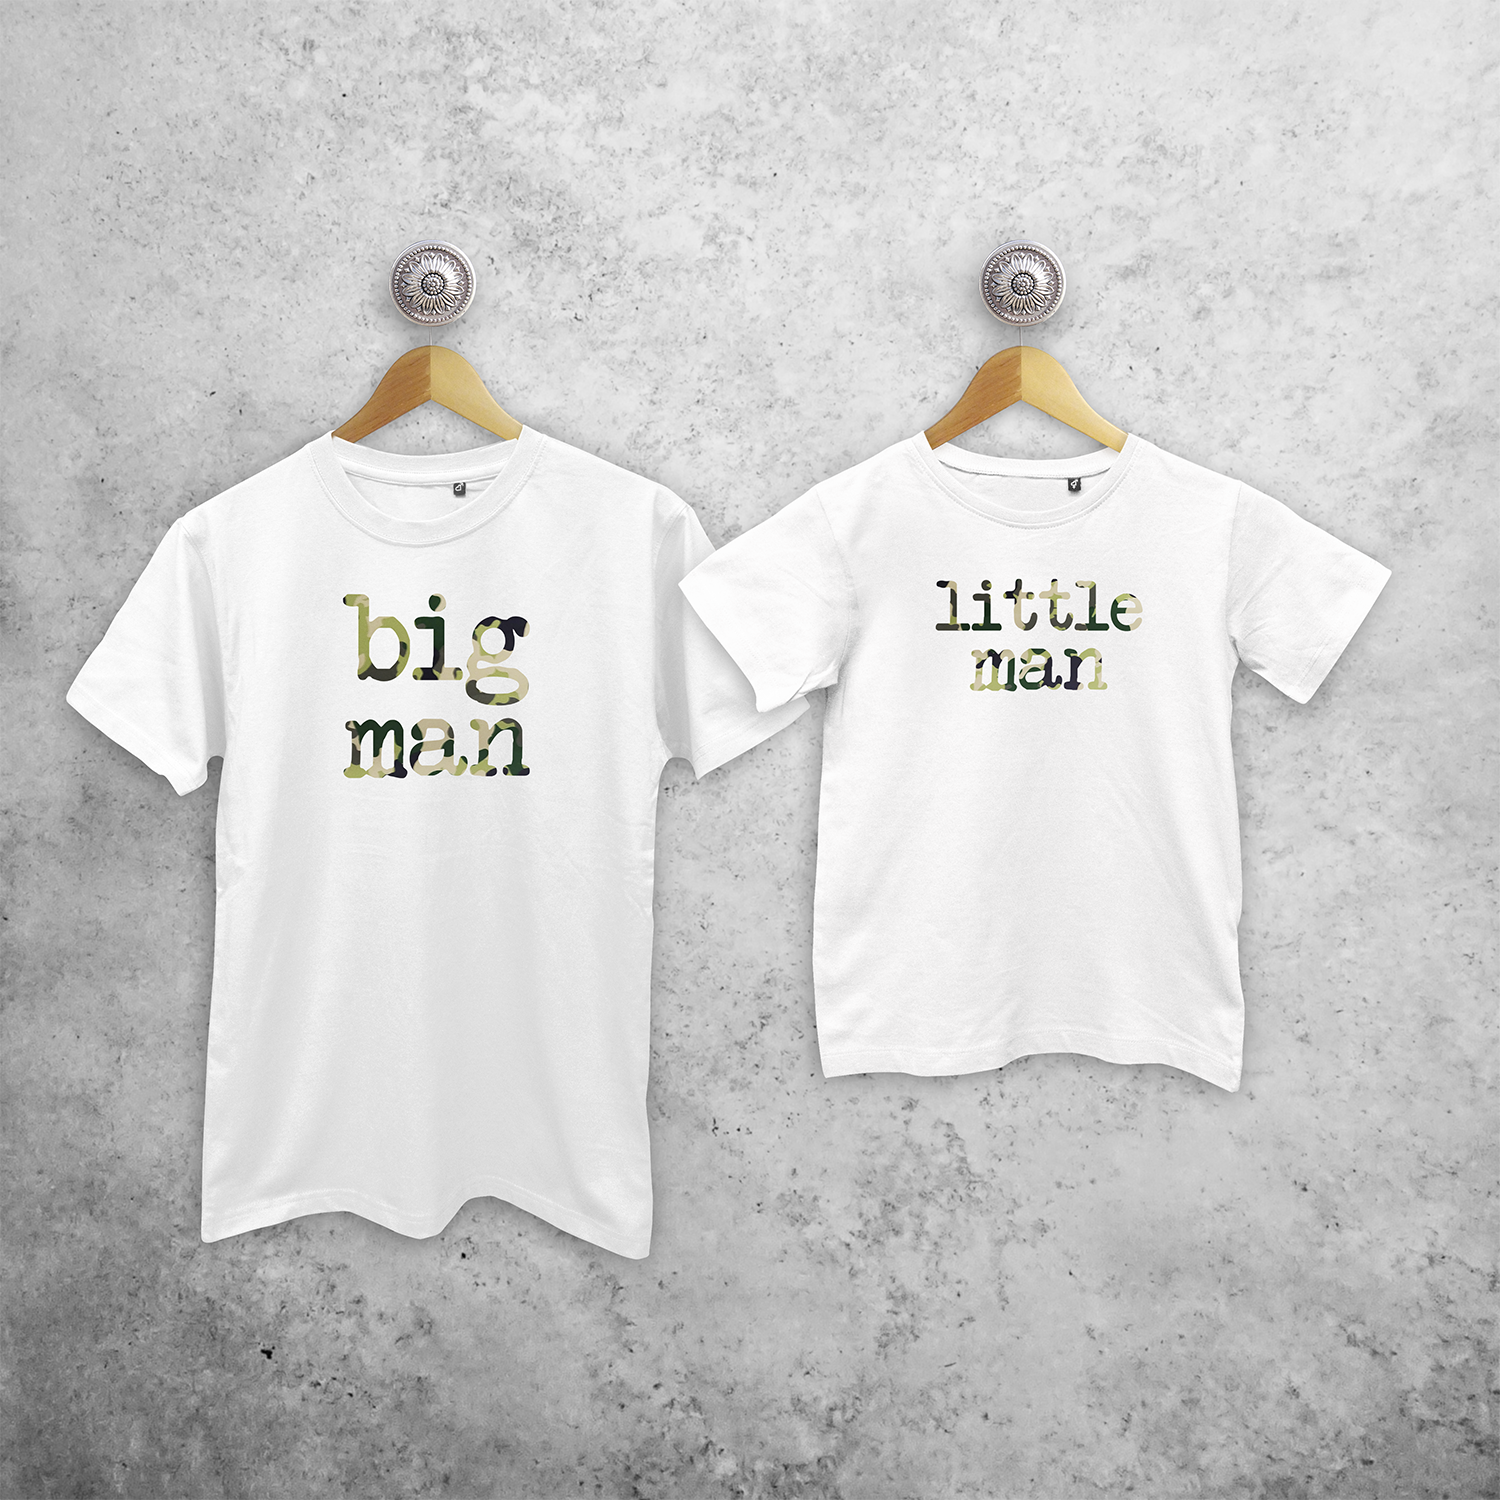 'Big man' & 'Little man' matchende shirts